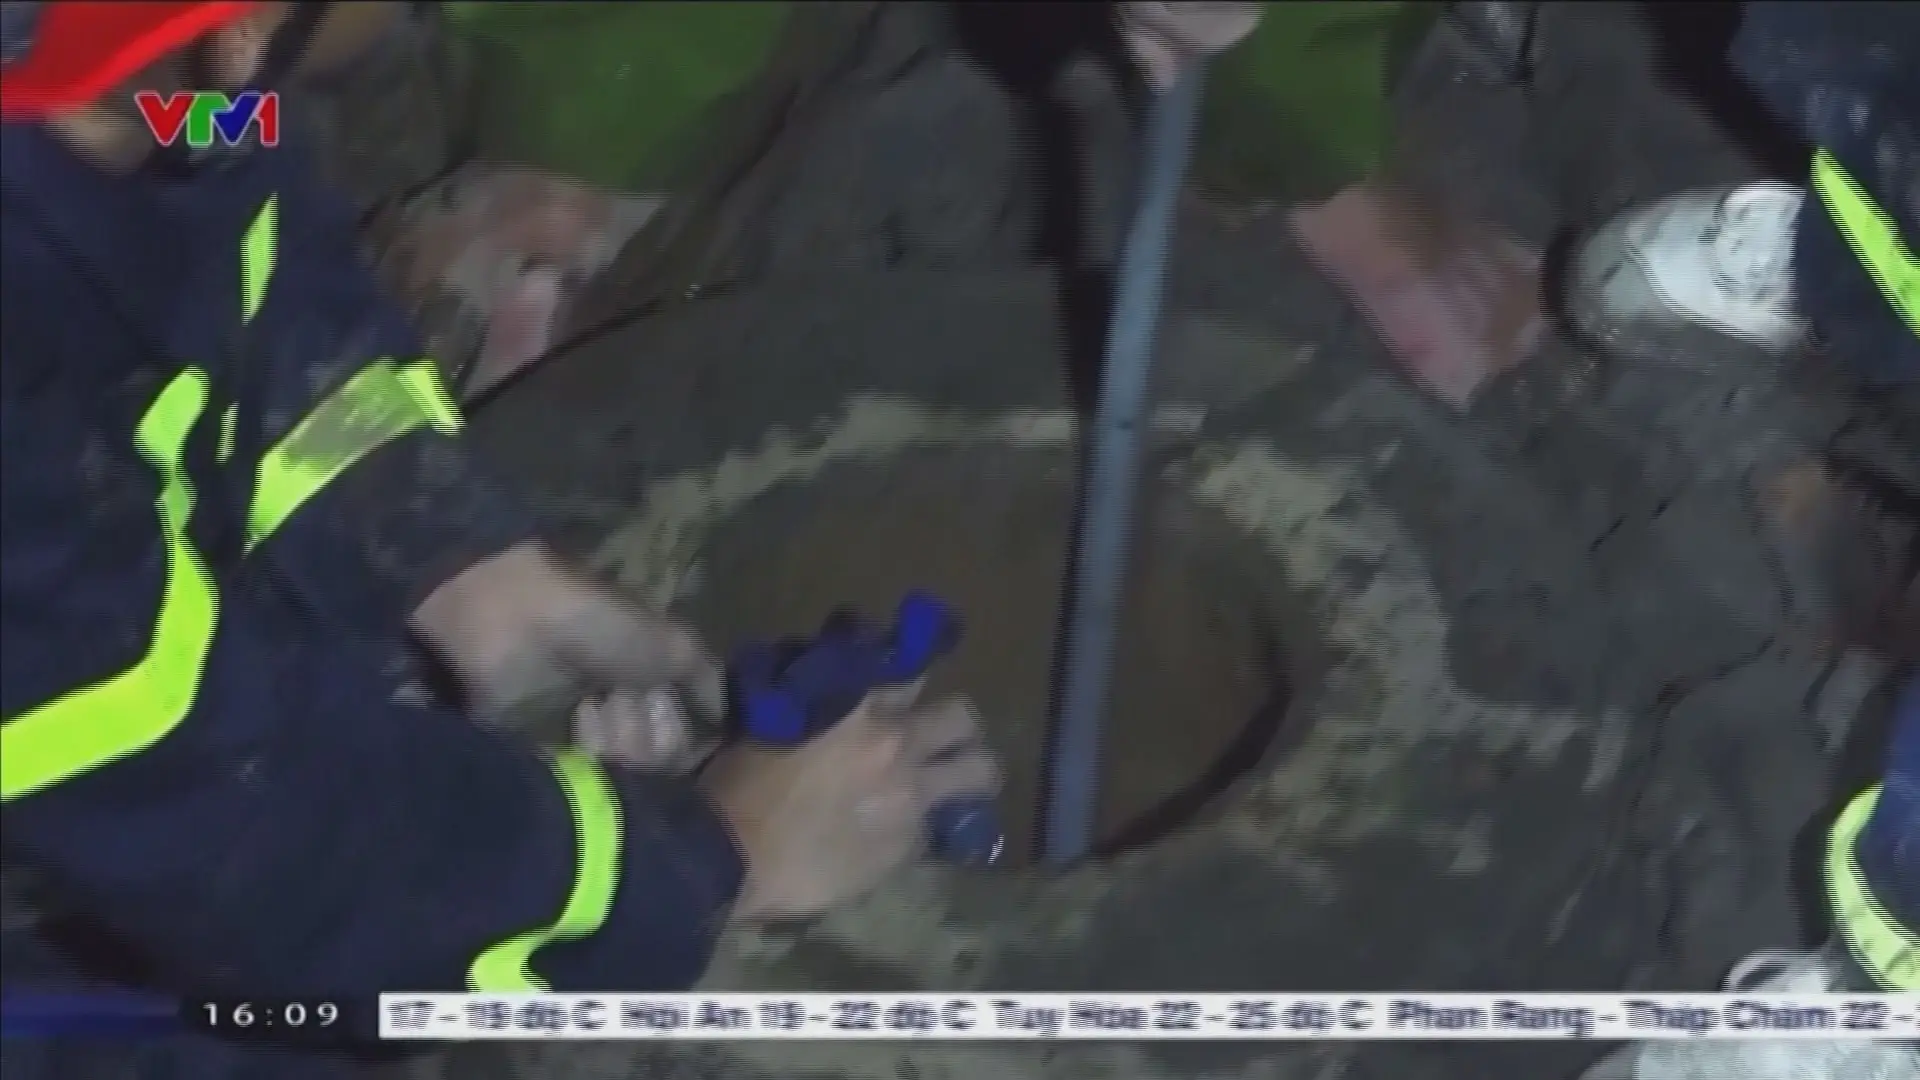 Equipas de resgate tentam salvar rapaz preso há dois dias num buraco no Vietname